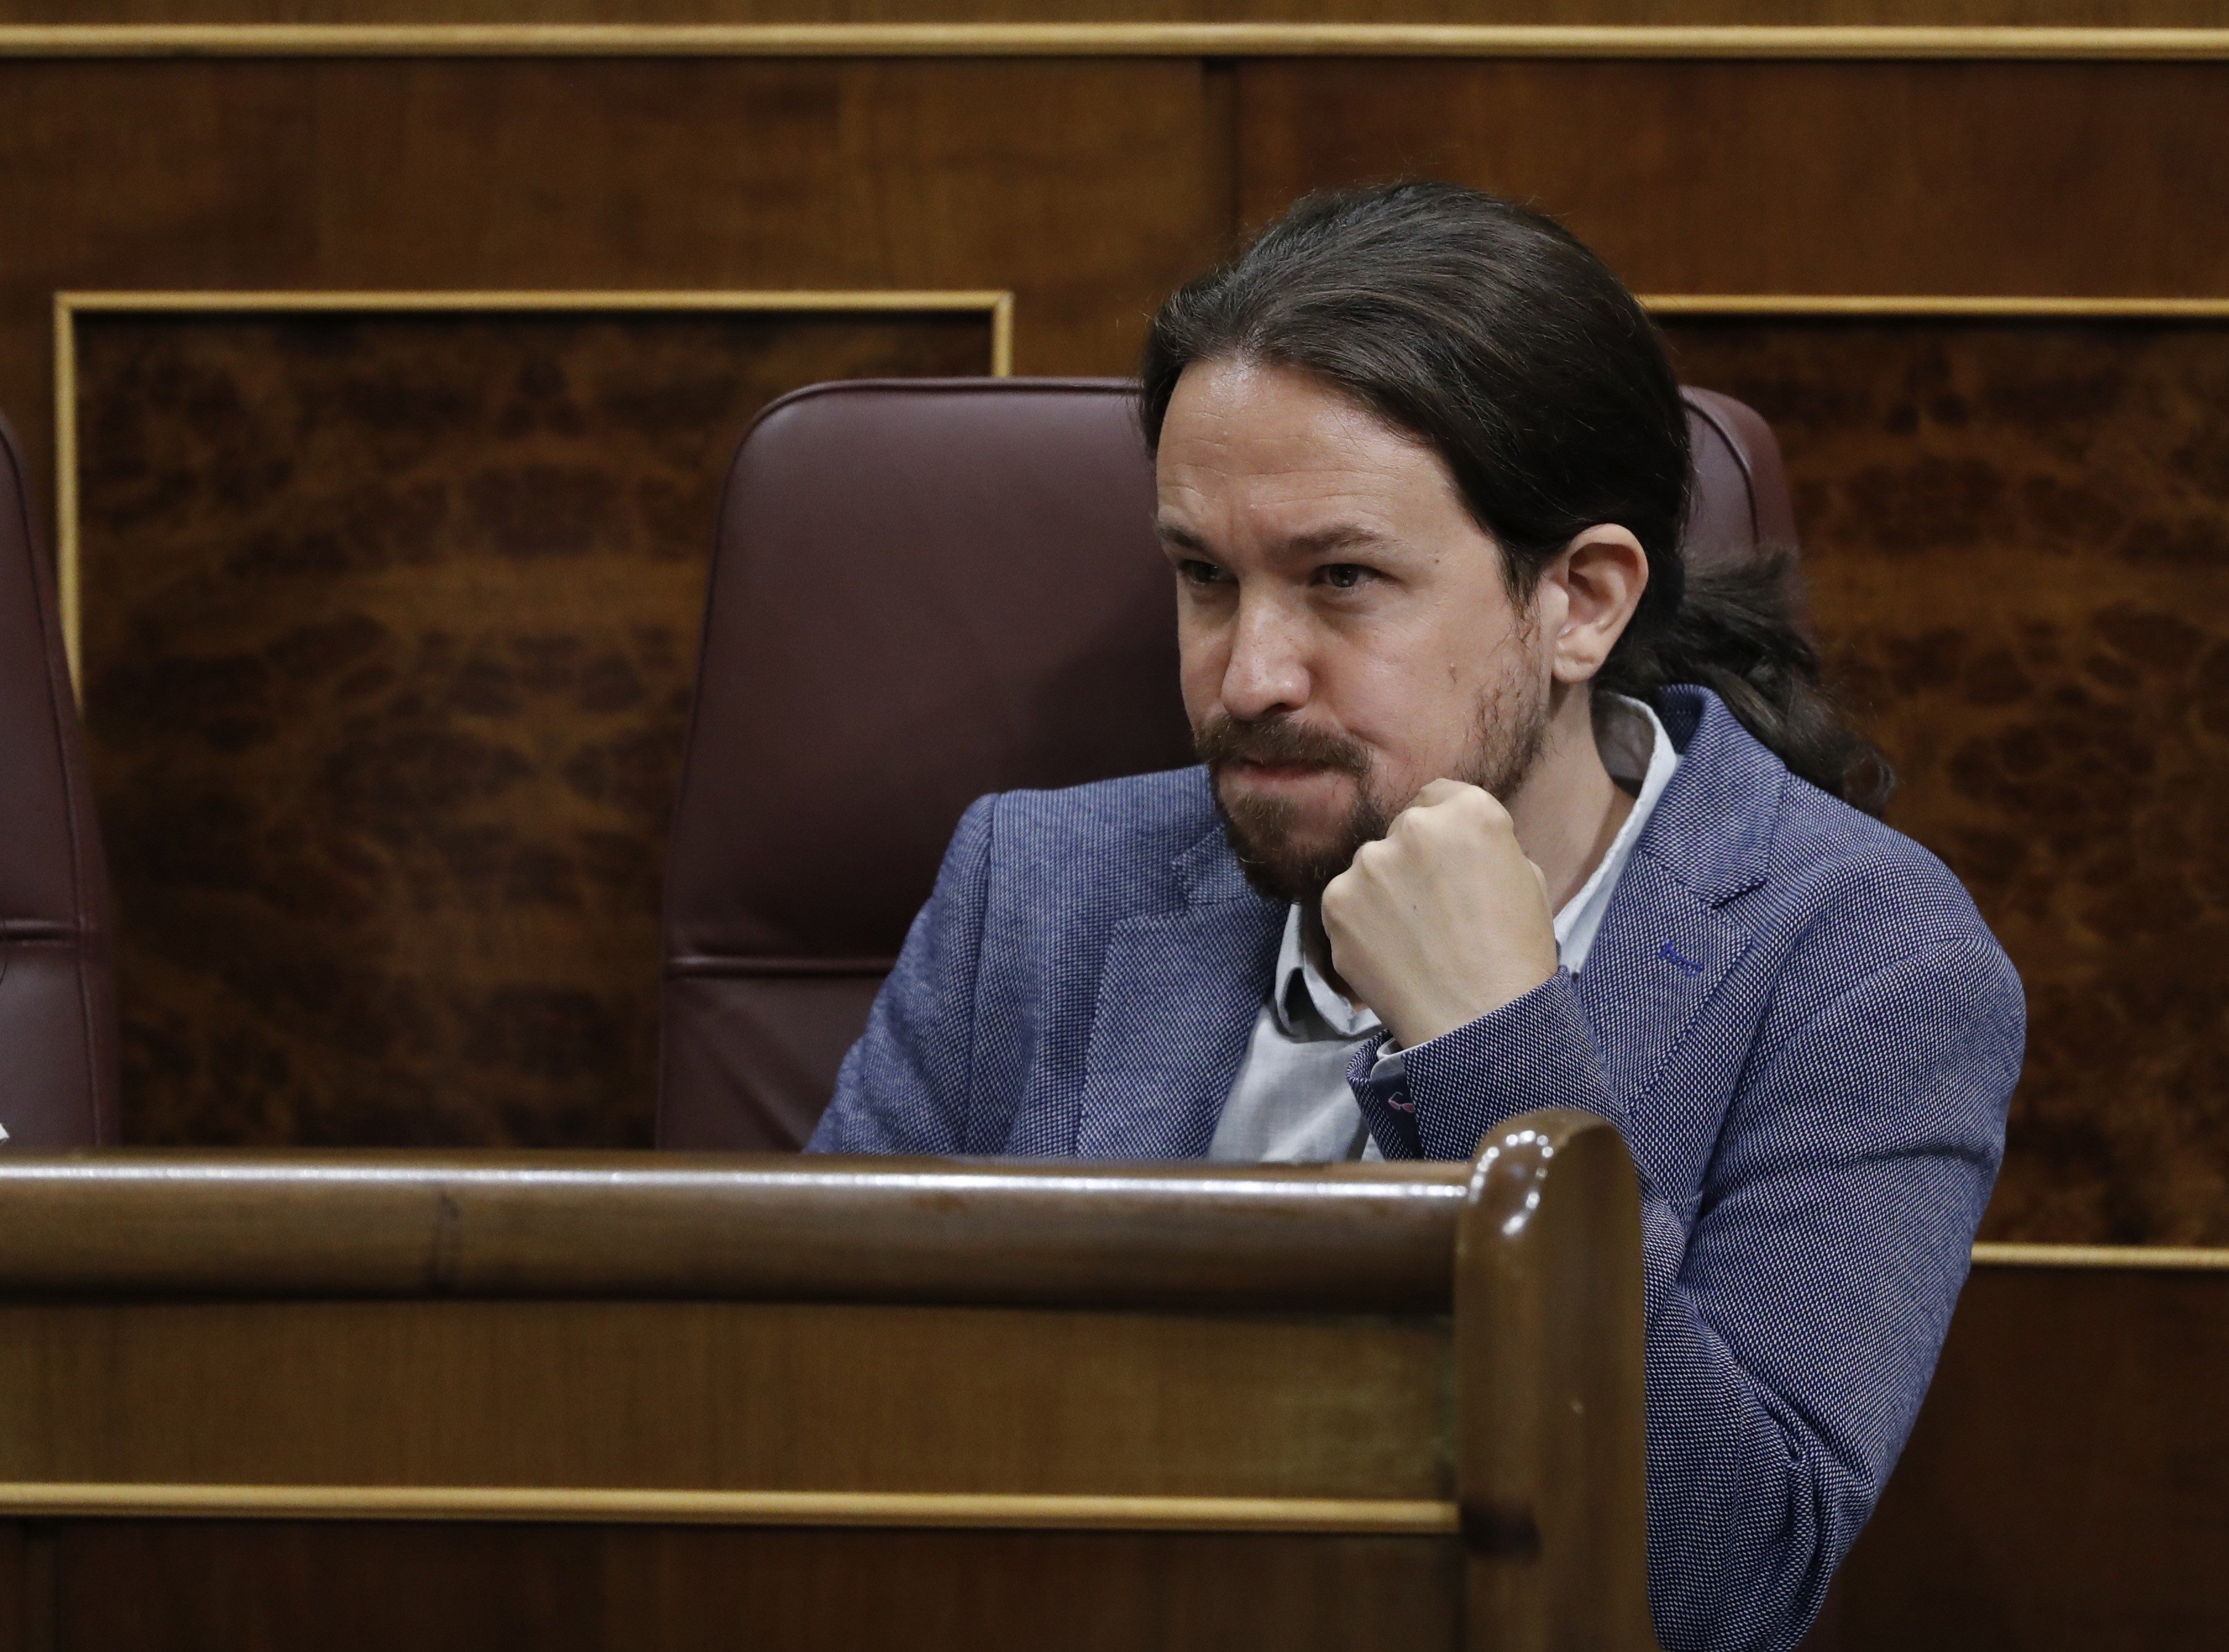 Iglesias piula fotos de ferits: "Aquesta és la vostra victòria, Rajoy?"